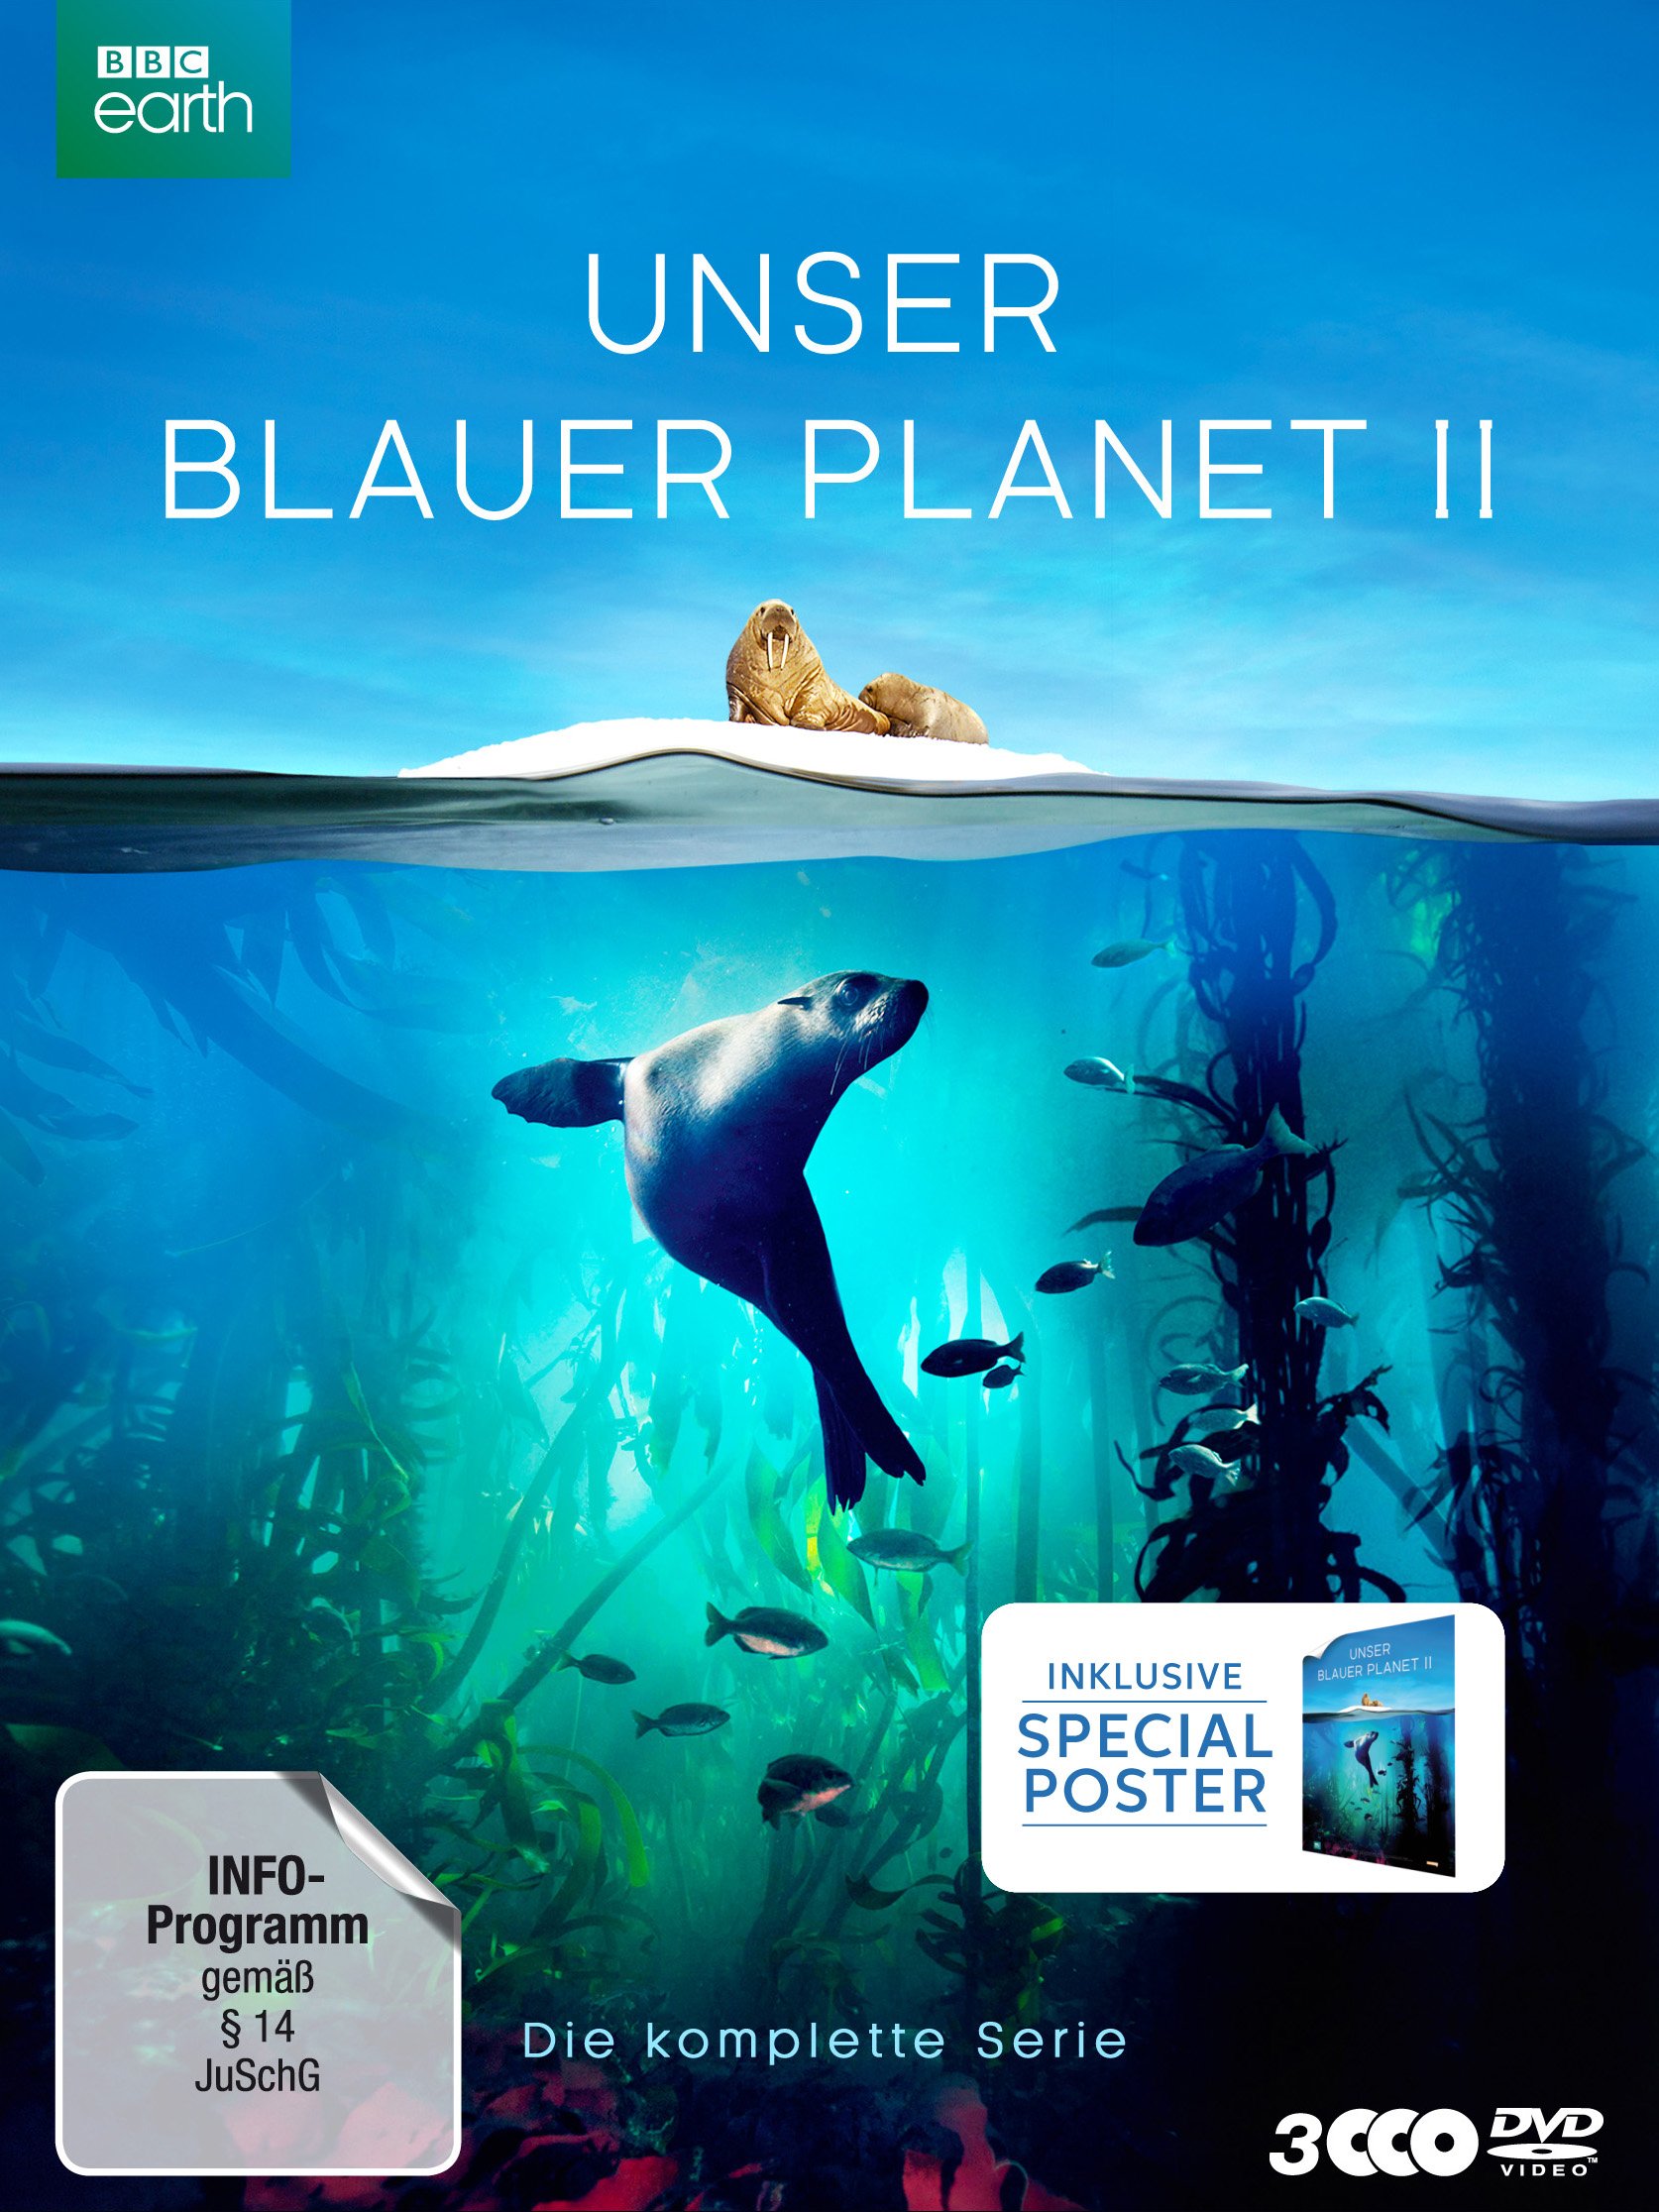 UNSER BLAUER PLANET II - Die komplette ungeschnittene Serie zur ARD-Reihe "Der blaue Planet" [3 DVDs] [Limited Collector's Edition- Version mit Poster) (exklusiv bei Amazon.de)